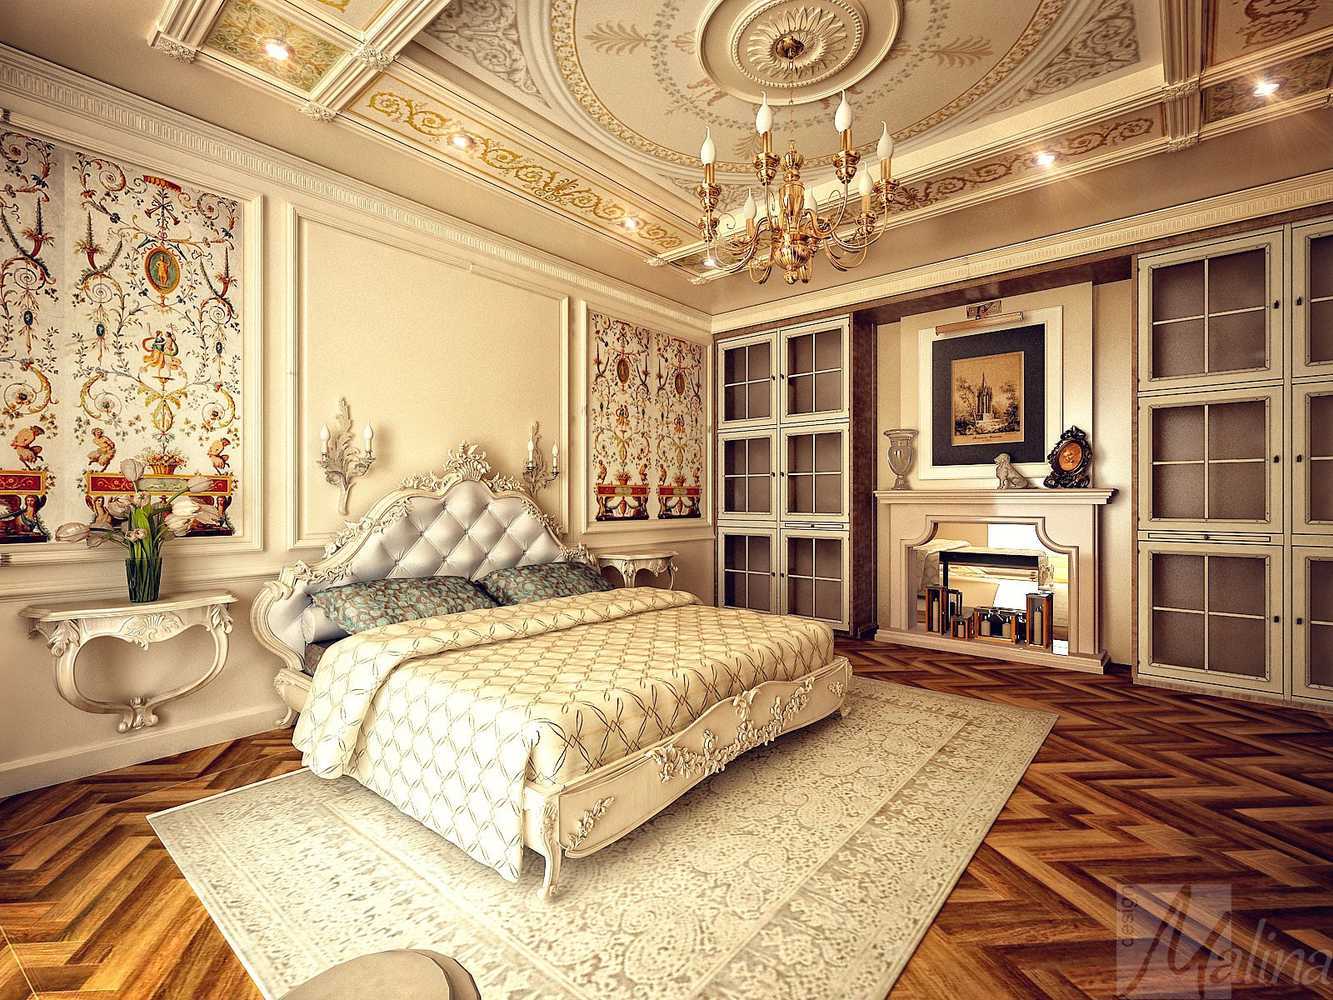 дворцовый интерьер спальни в стиле барокко, лепнина на потолке, роспись на стене за кроватью